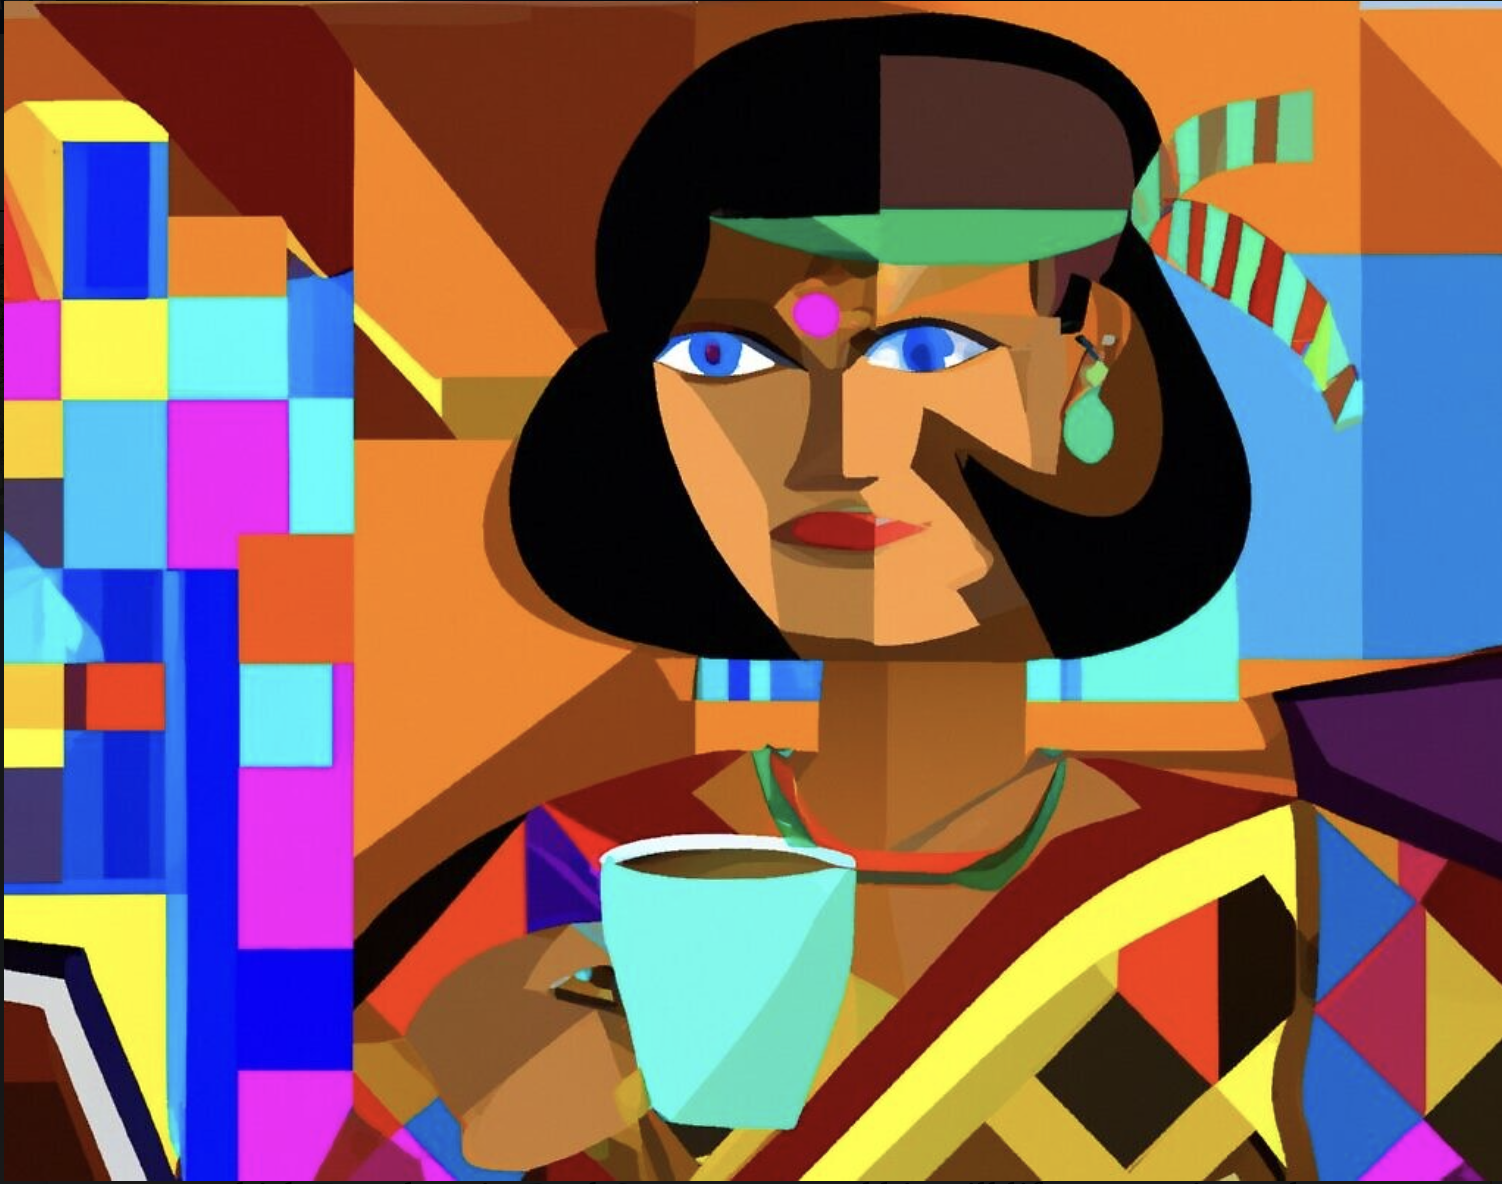  Une image créée par DALL-E, un modèle d'apprentissage profond développé par OpenAI, à l'invite de Shoshanna Solomon : " Femme journaliste assise à son bureau avec un ordinateur portable et une tasse de café chaude dans le style cubiste ", en décembre 2022. (Crédit : Image générée par DALL-E)